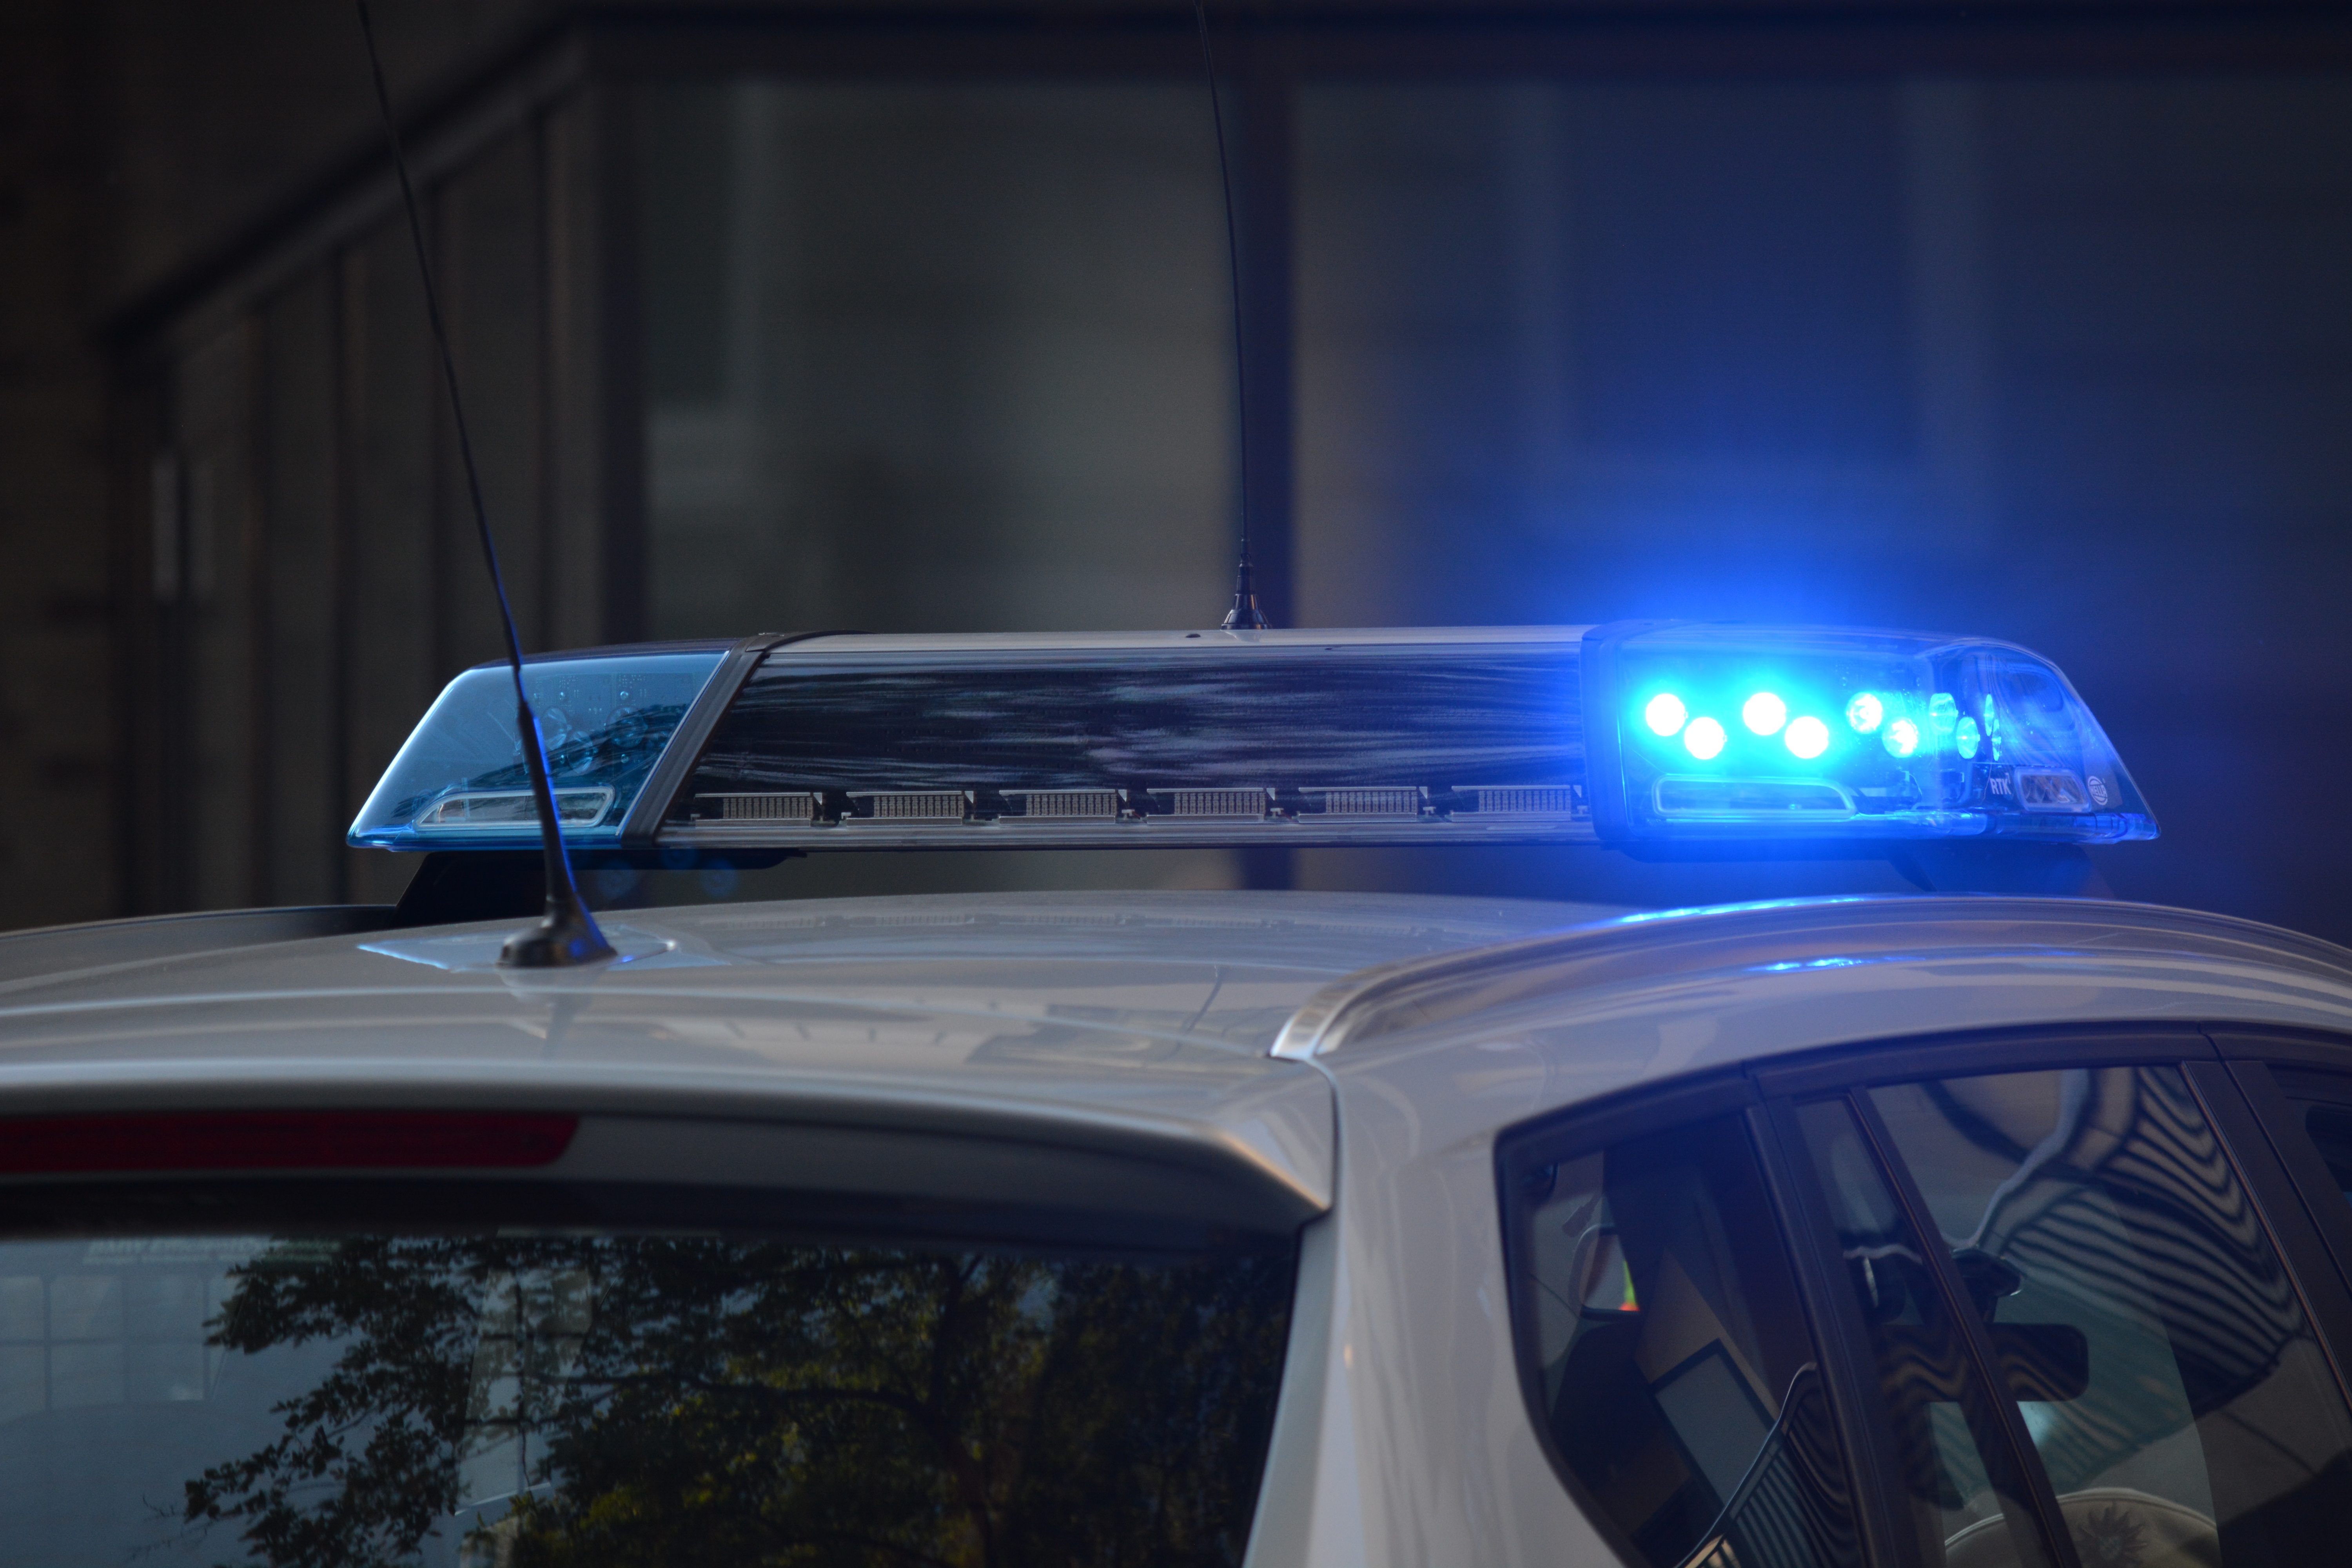 Fastnachtswagen in Nannhausen kippt um – Insassen verletzt